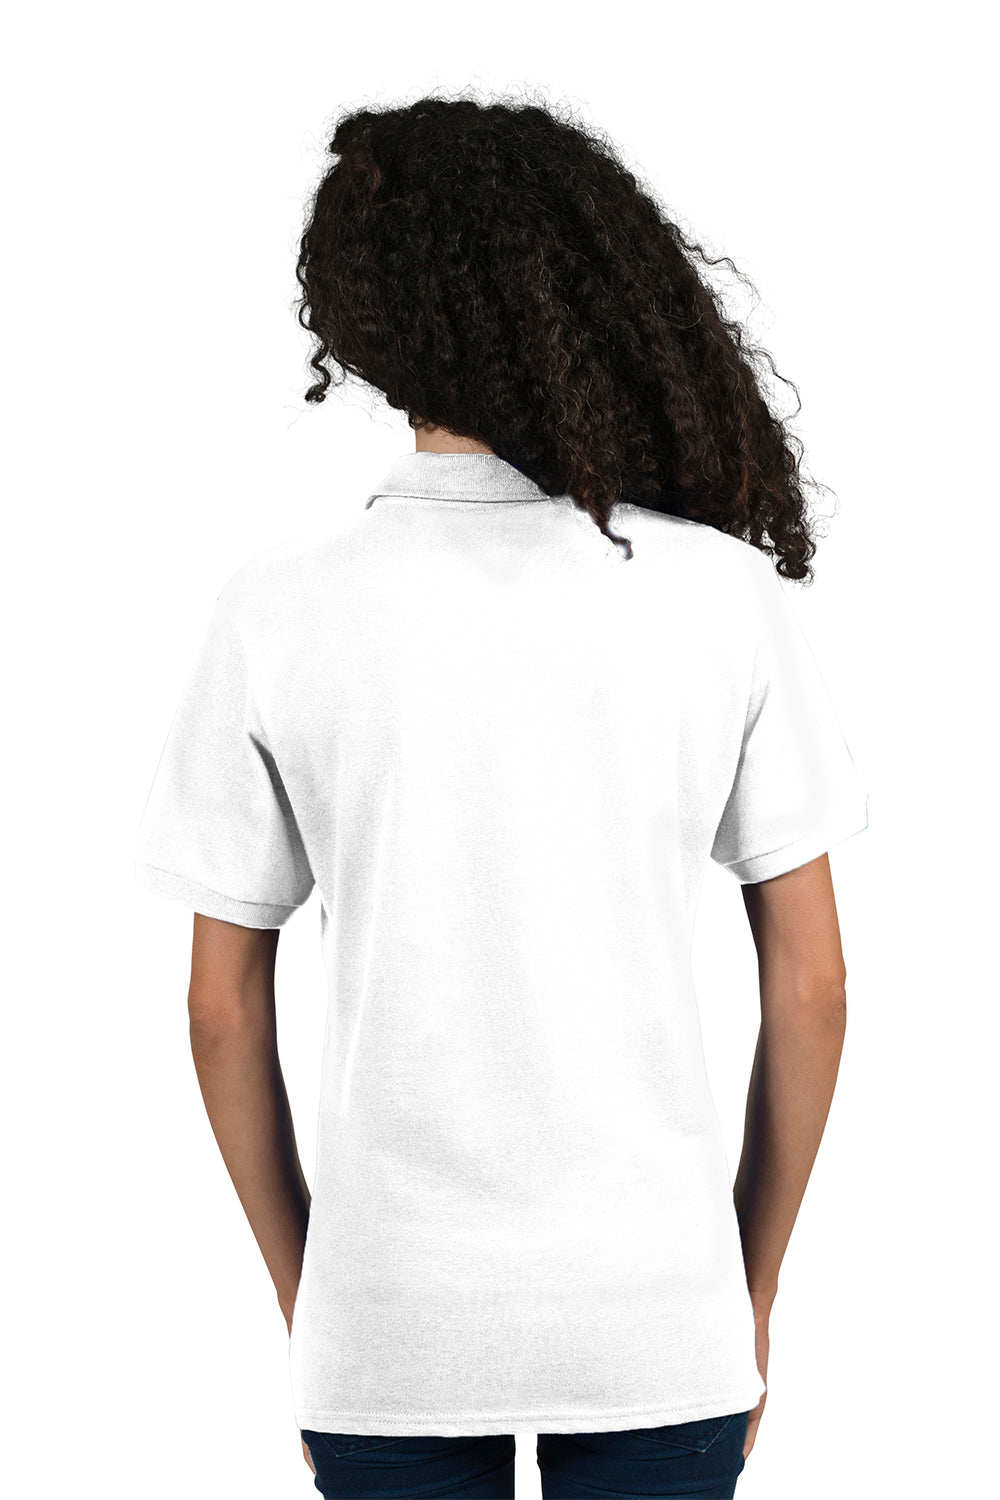 Jerzees 443WR Womens Short Sleeve Polo Shirt White Back